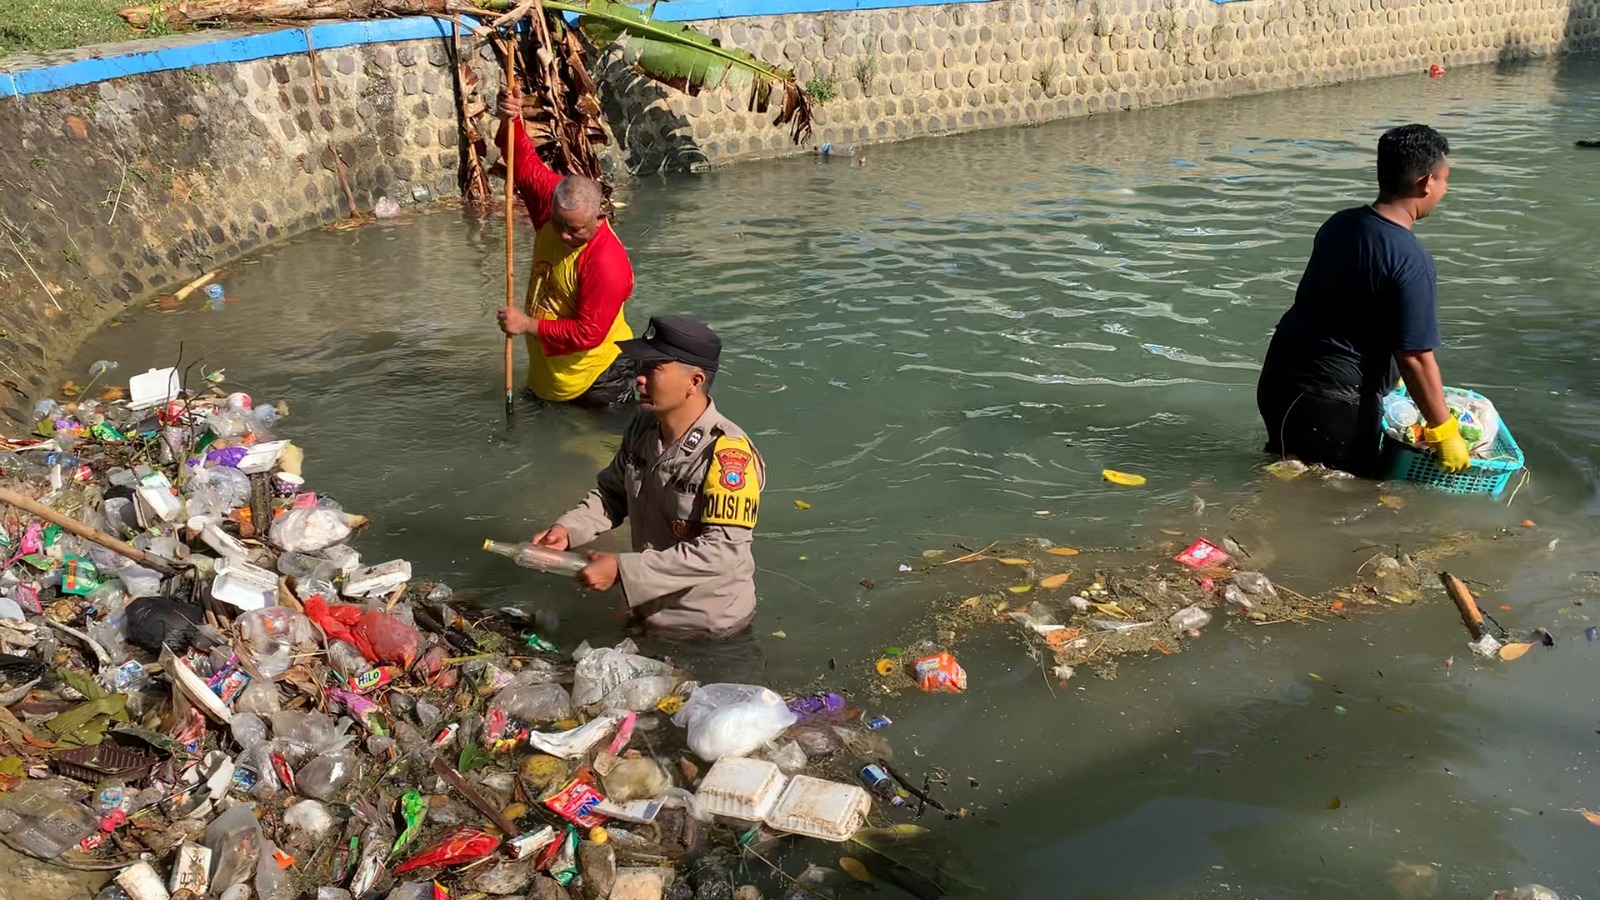 Peduli Lingkungan Polisi RW Polres Tuban Bersama Warga Bersihkan Sampah di Sungai